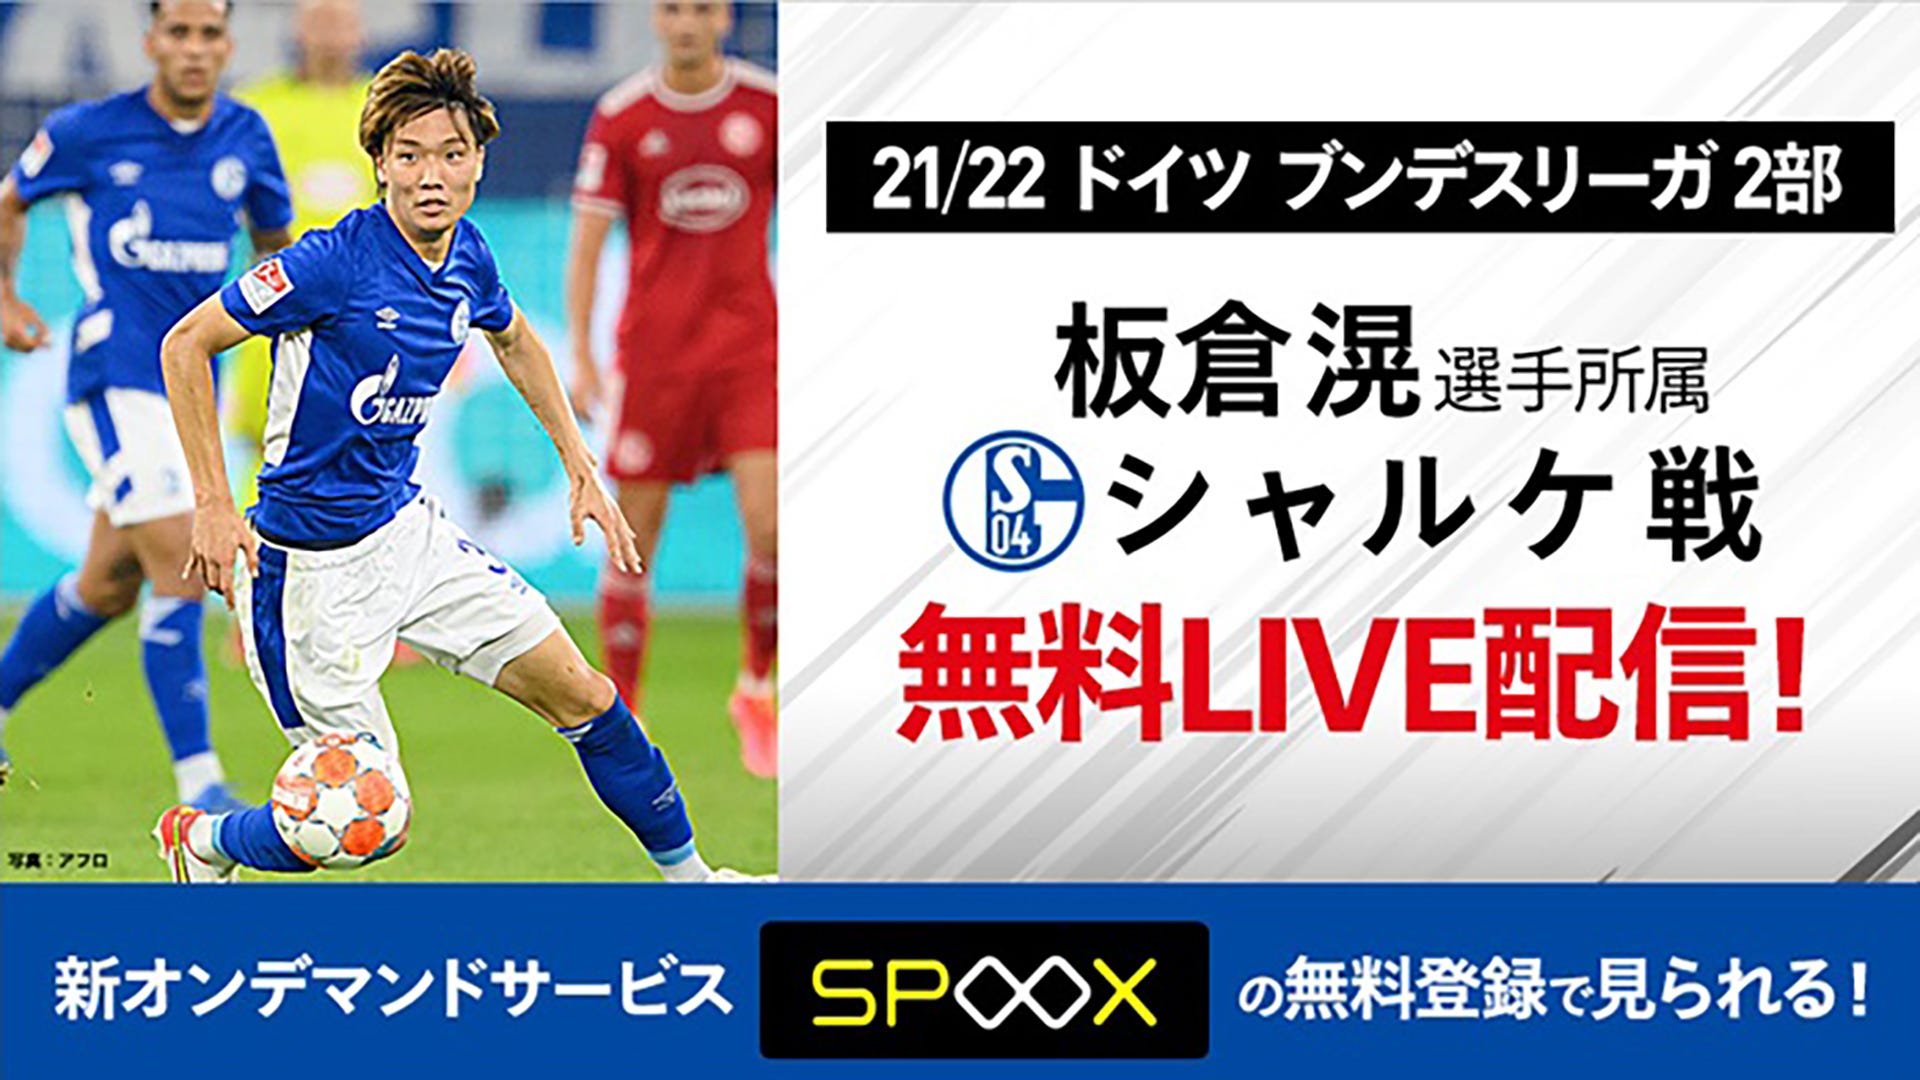 スカパー が板倉滉所属のシャルケ戦を今季終了まで無料live配信 Goal Com 日本